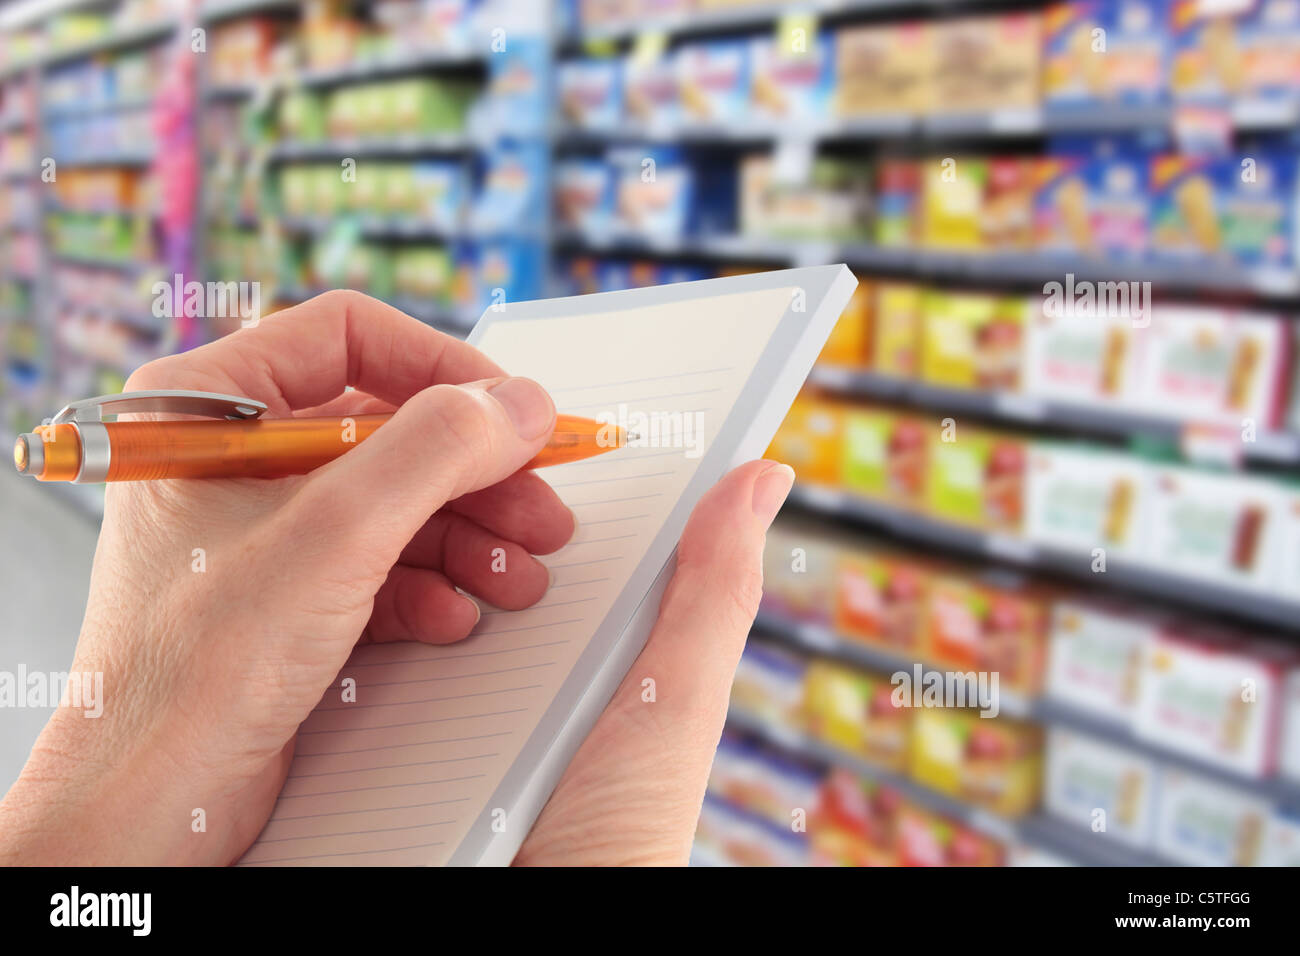 Schreiben Sie eine Einkaufsliste im Supermarkt Stockfoto